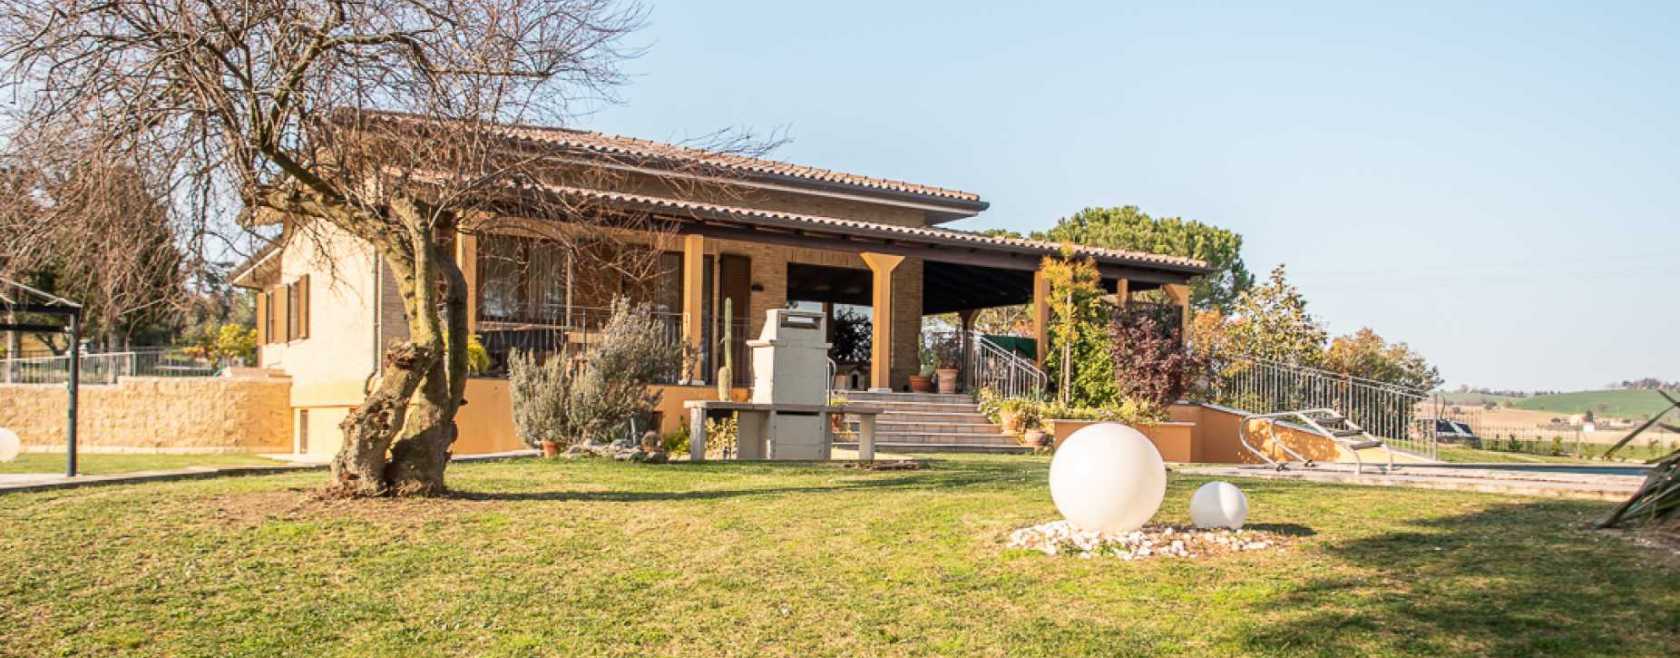 Villa with swimming pool Montecassiano (MC)